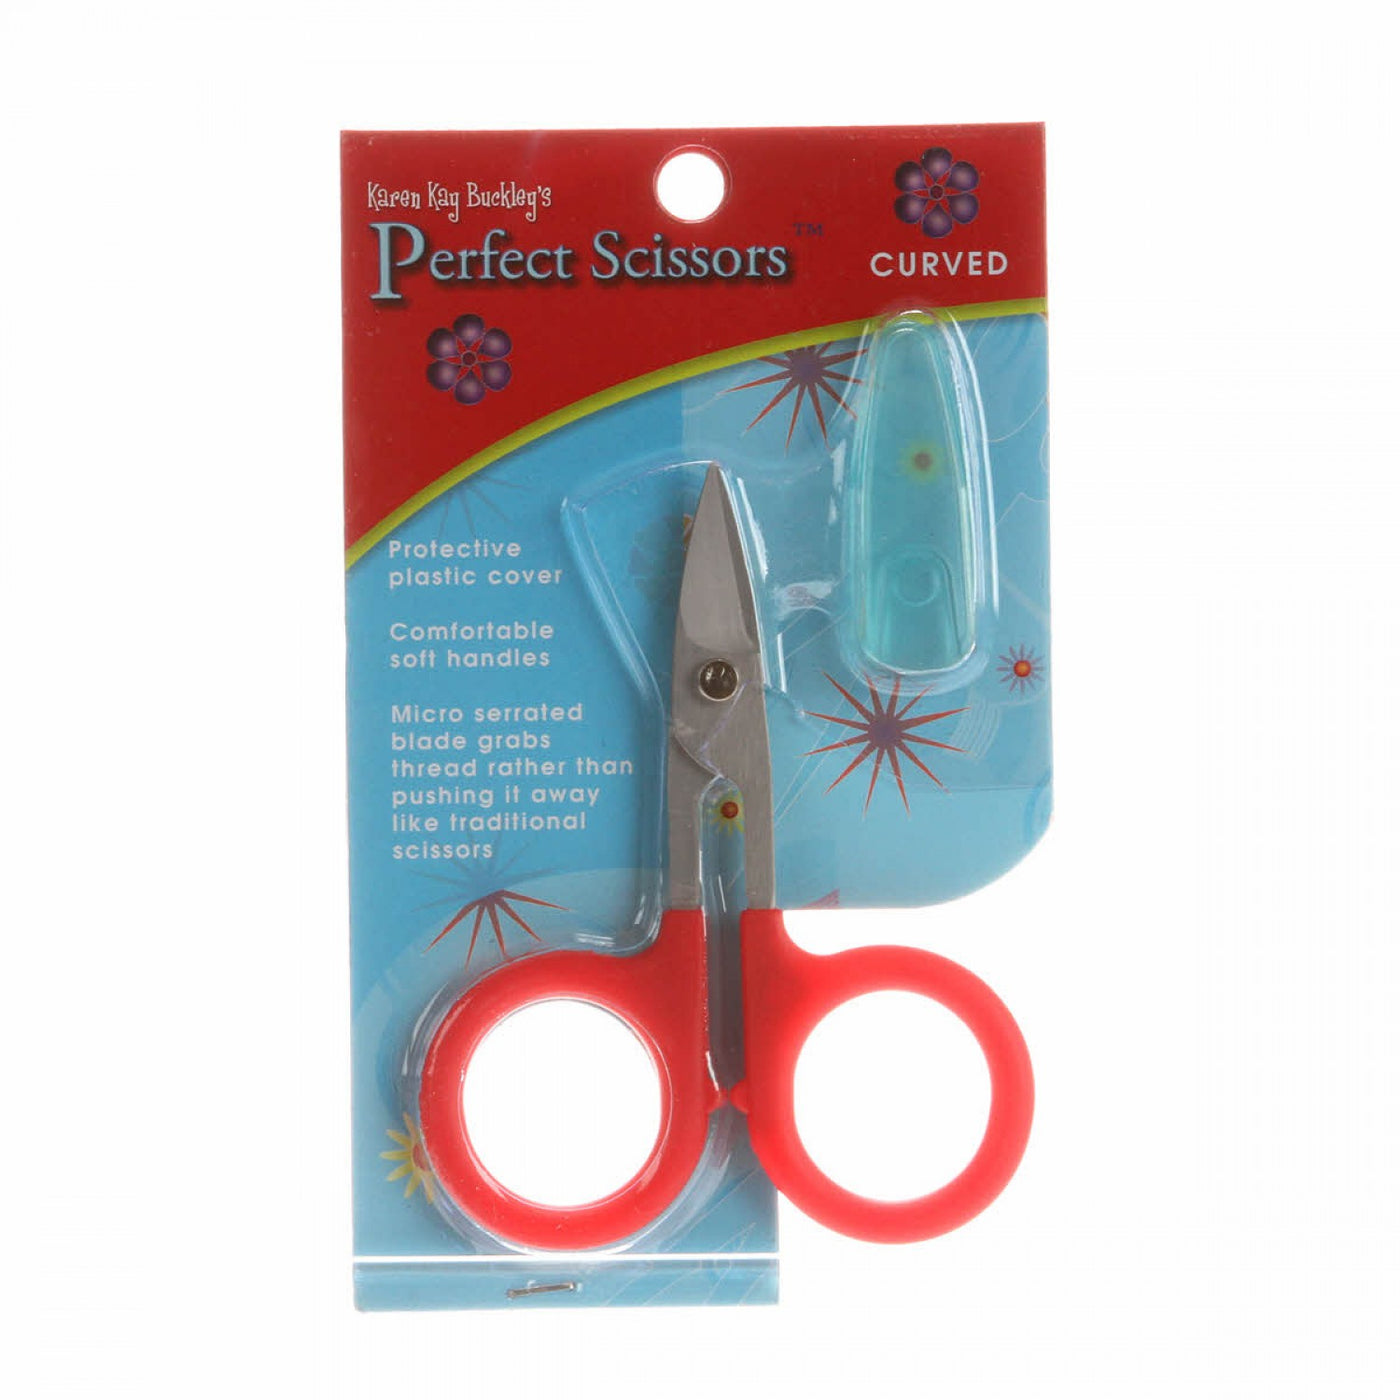 Perfect Scissors Curved - Karen Kay Buckley